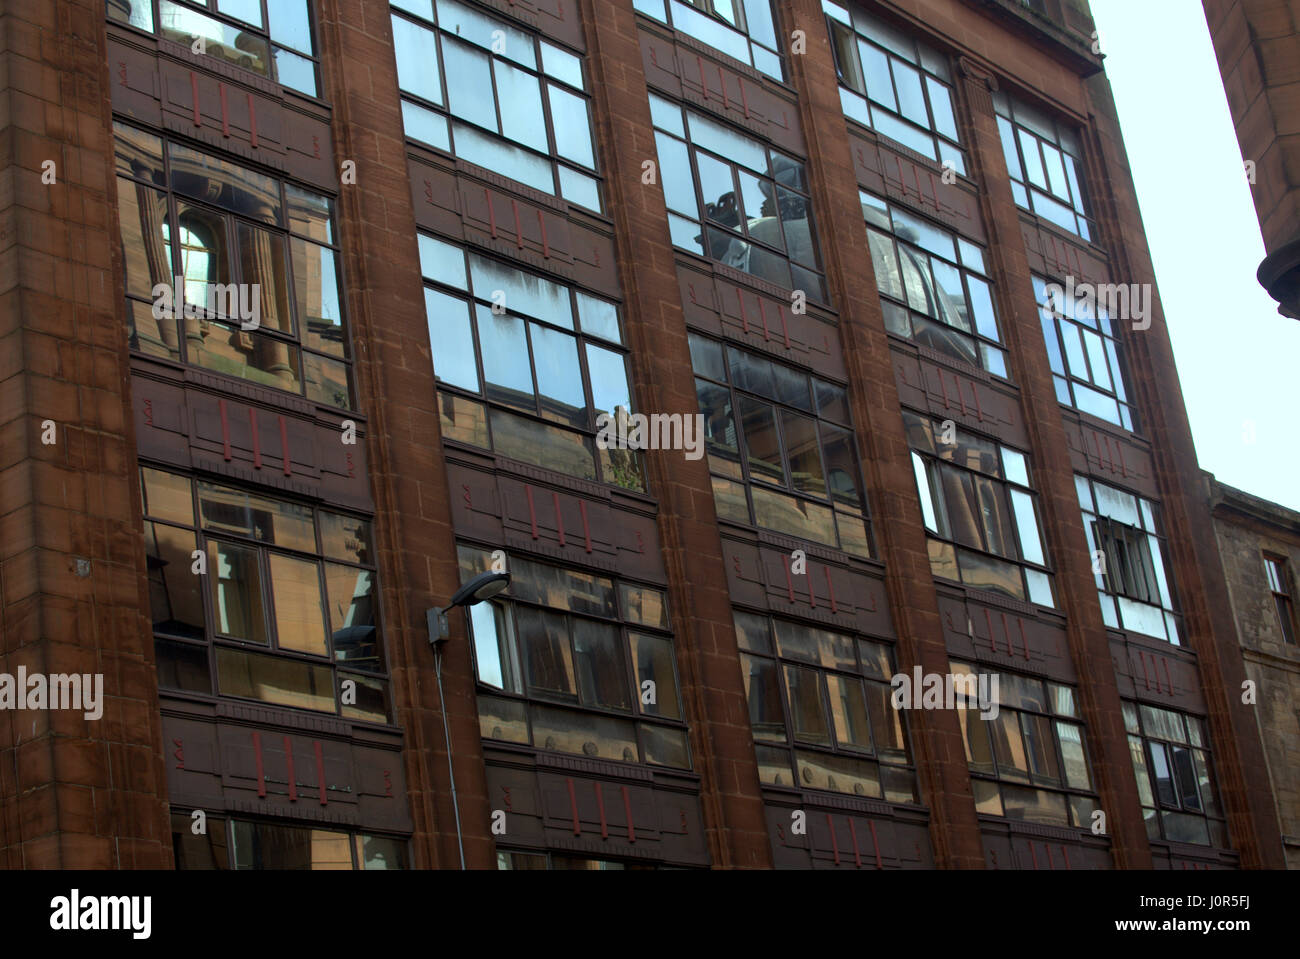 Reflexion von Glasgow viktorianischen roten Sandstein verzierten Gebäude im späteren 20. Jahrhundert Art Deco industrielle Fassade Stockfoto